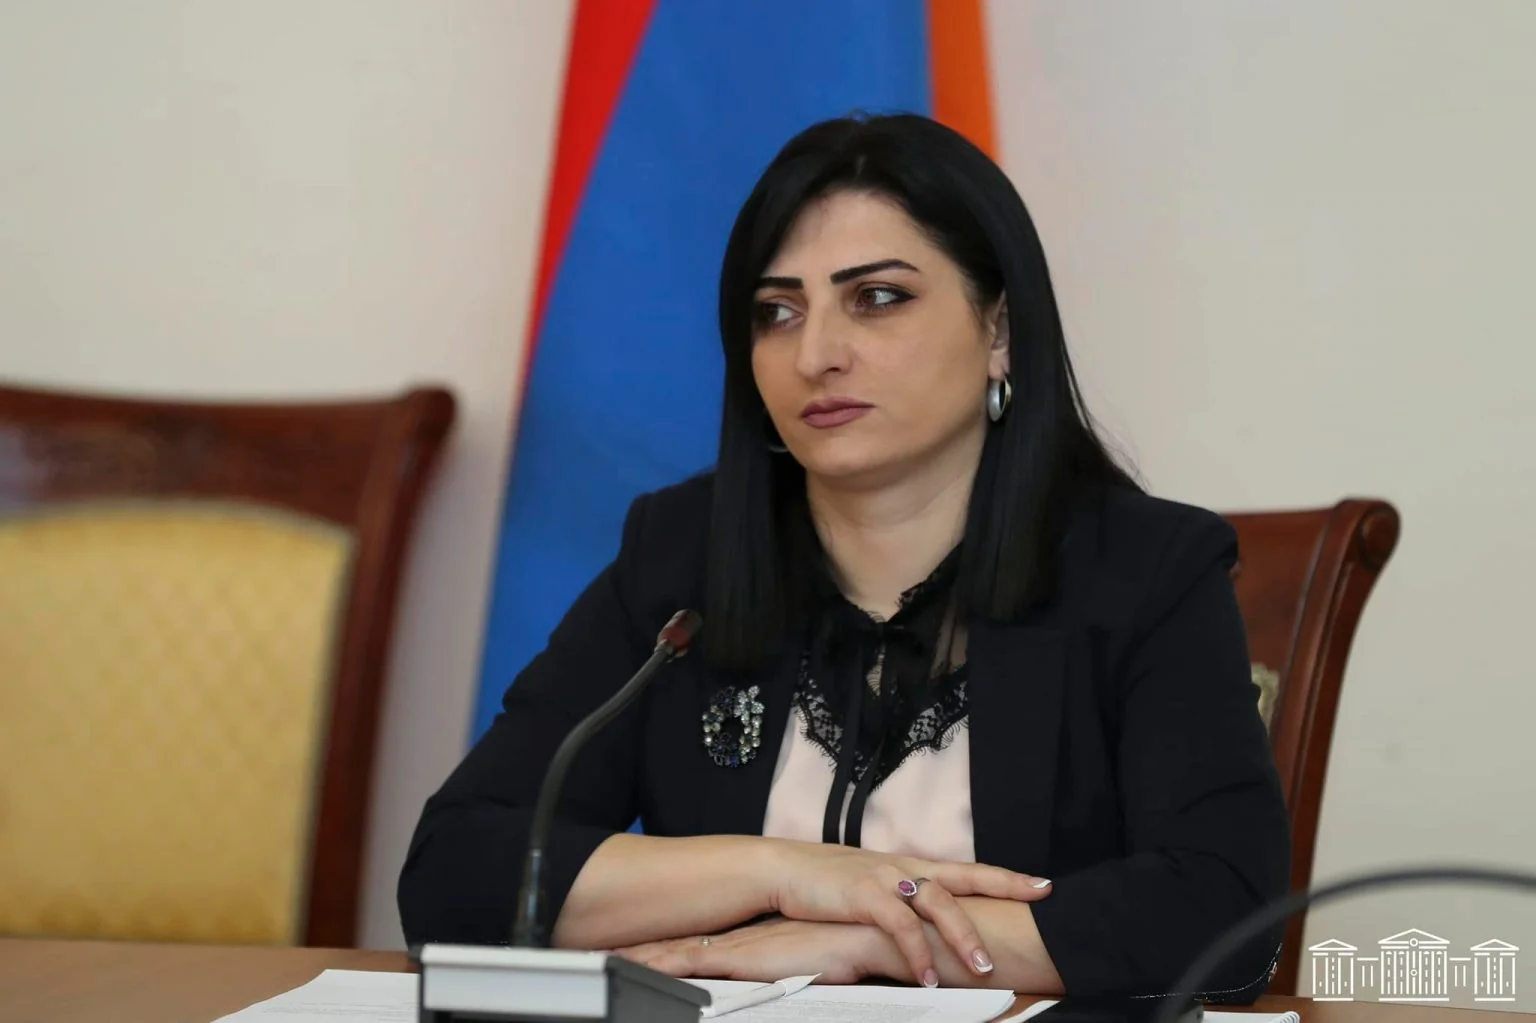 Председатель комиссии НС по защите прав человека в срочном порядке обратилась к международным партнерам, чтобы предпринять практические шаги по предотвращению возможного нападения Азербайджана на Армению